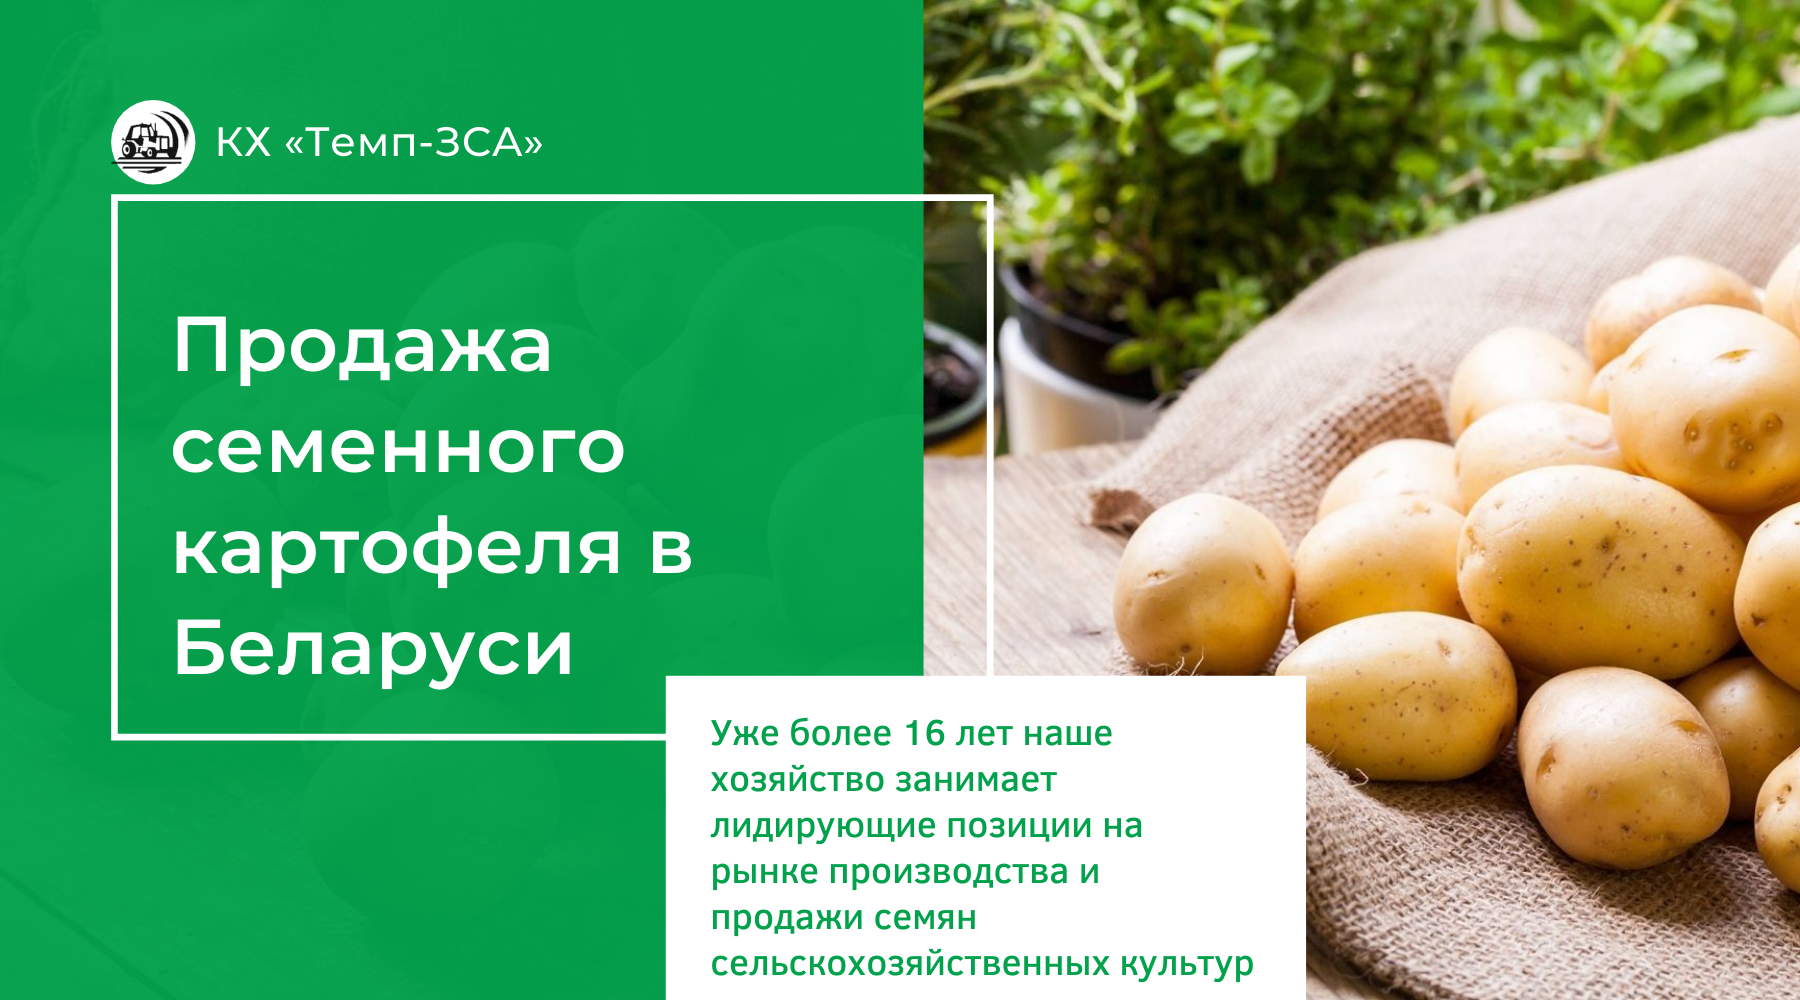 Продажа семенного картофеля в РБ